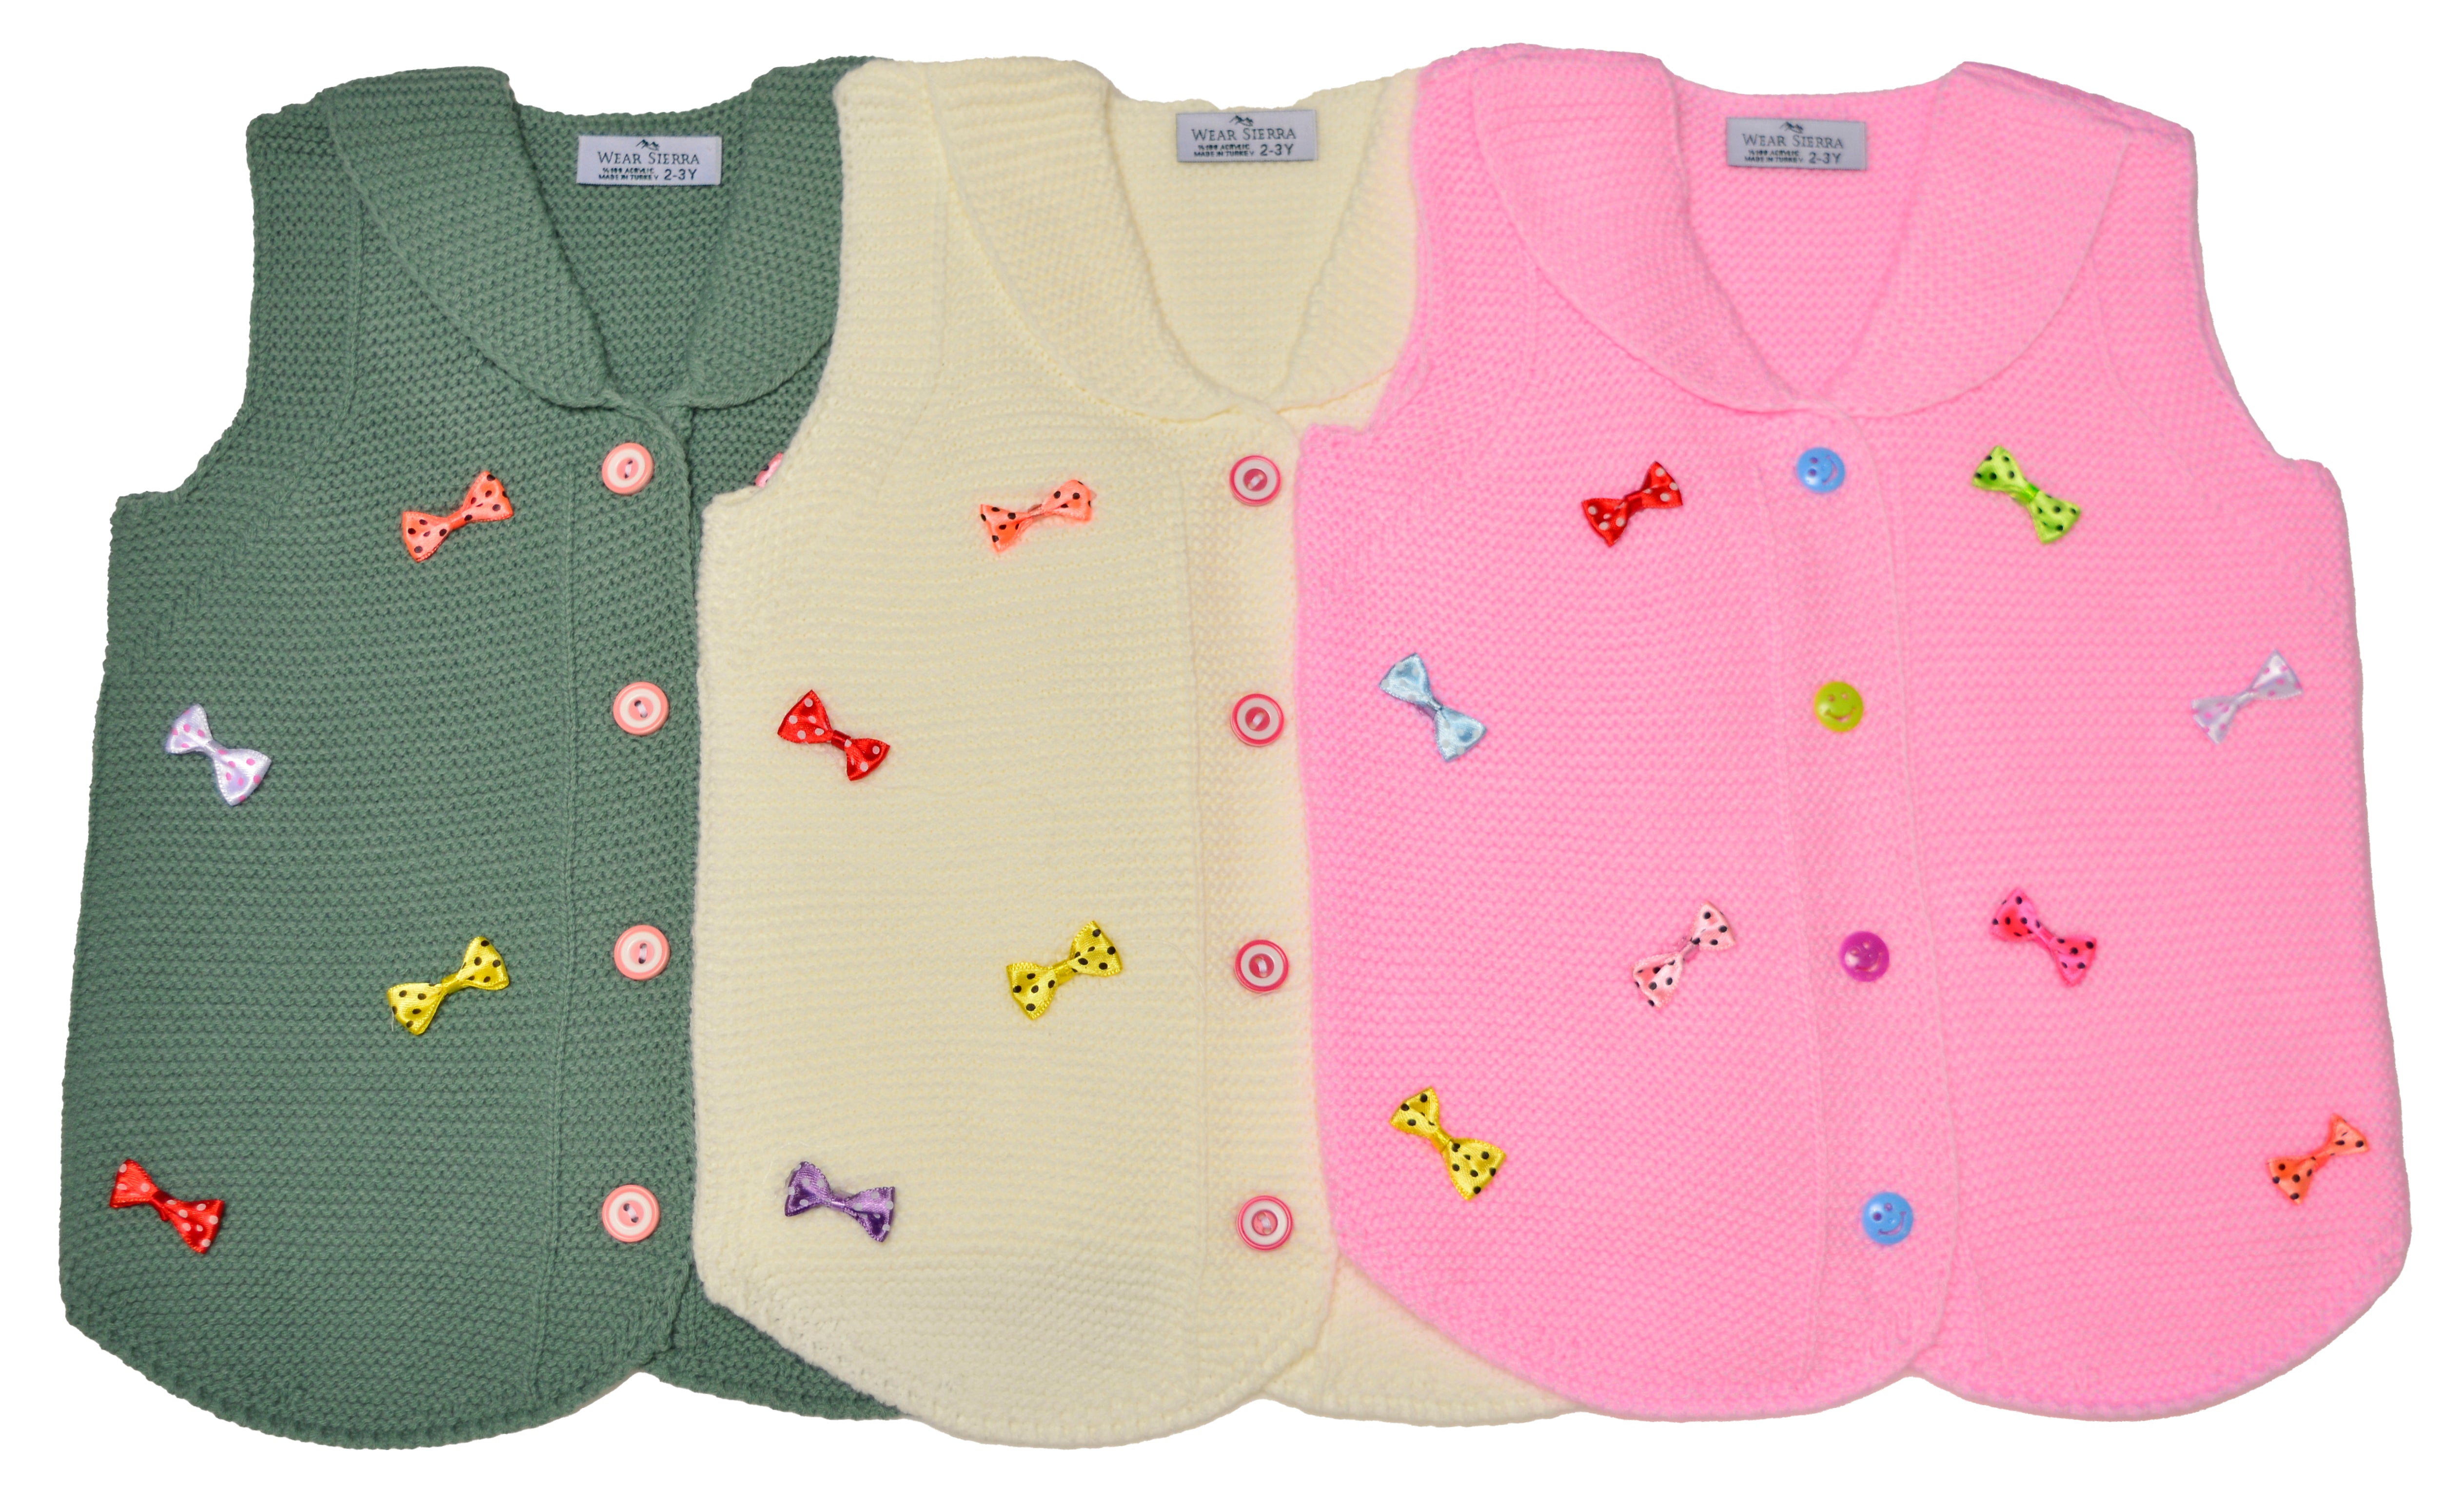 Wear Sierra Vest Bows Sweaters For Toddlers And Girls - Wear Sierra